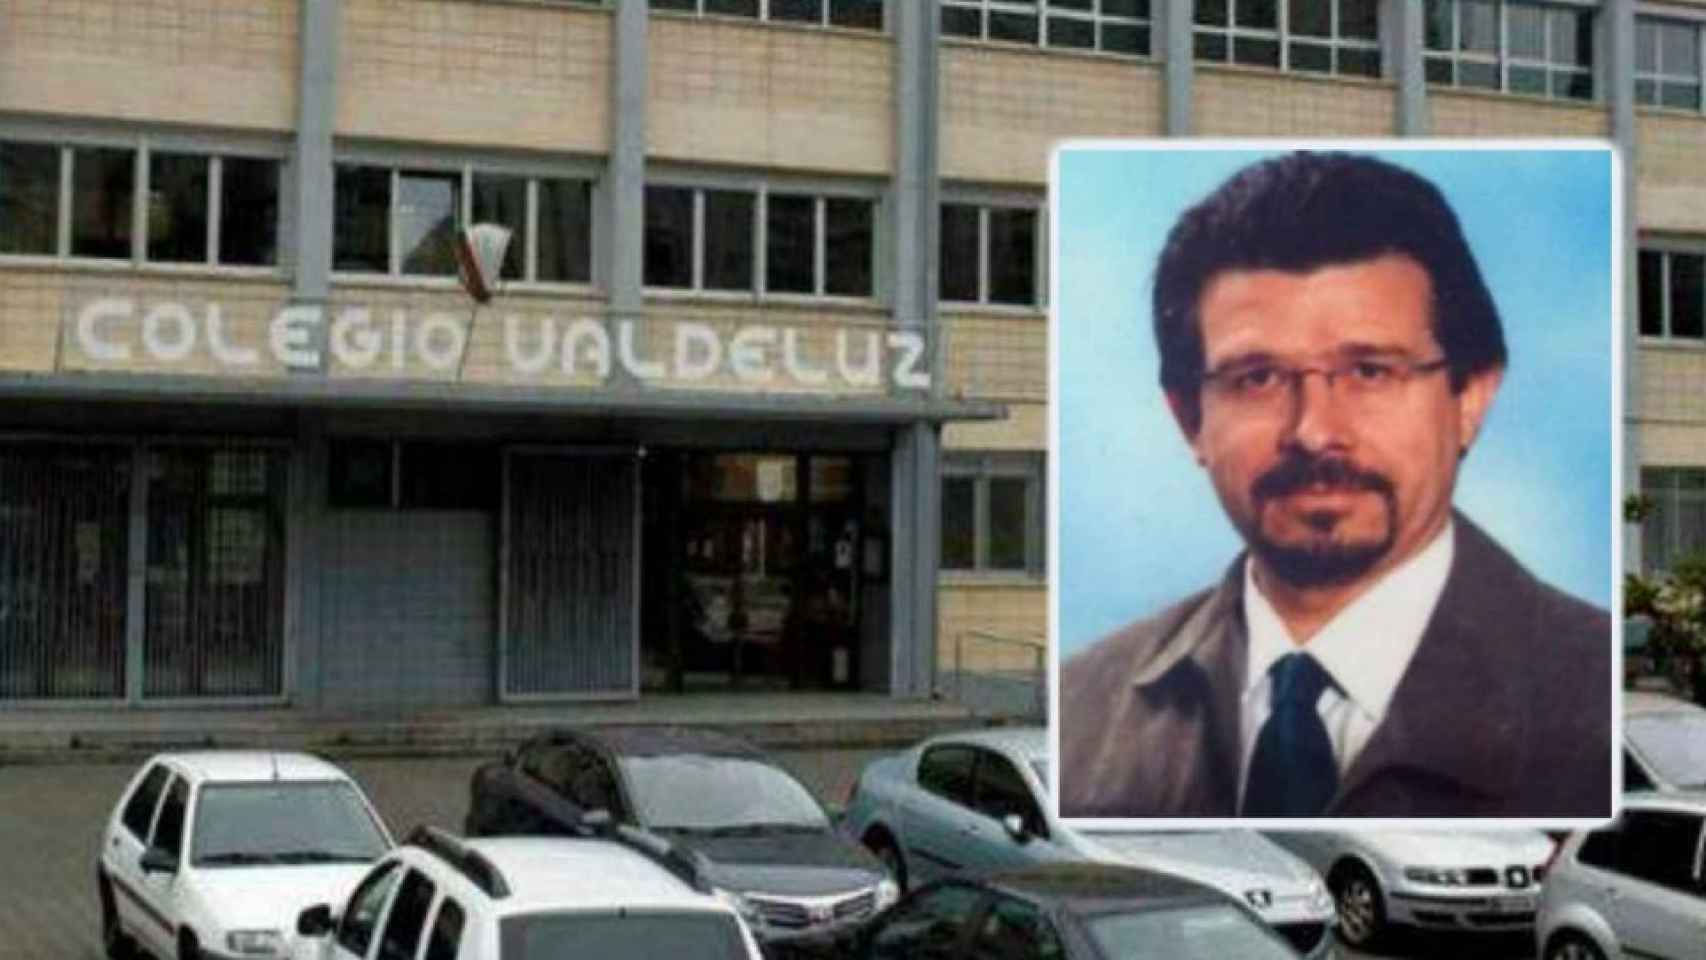 El colegio Valdeluz (Agustinos) y el profesor acusado de los abusos, Andrés Díaz Díaz.